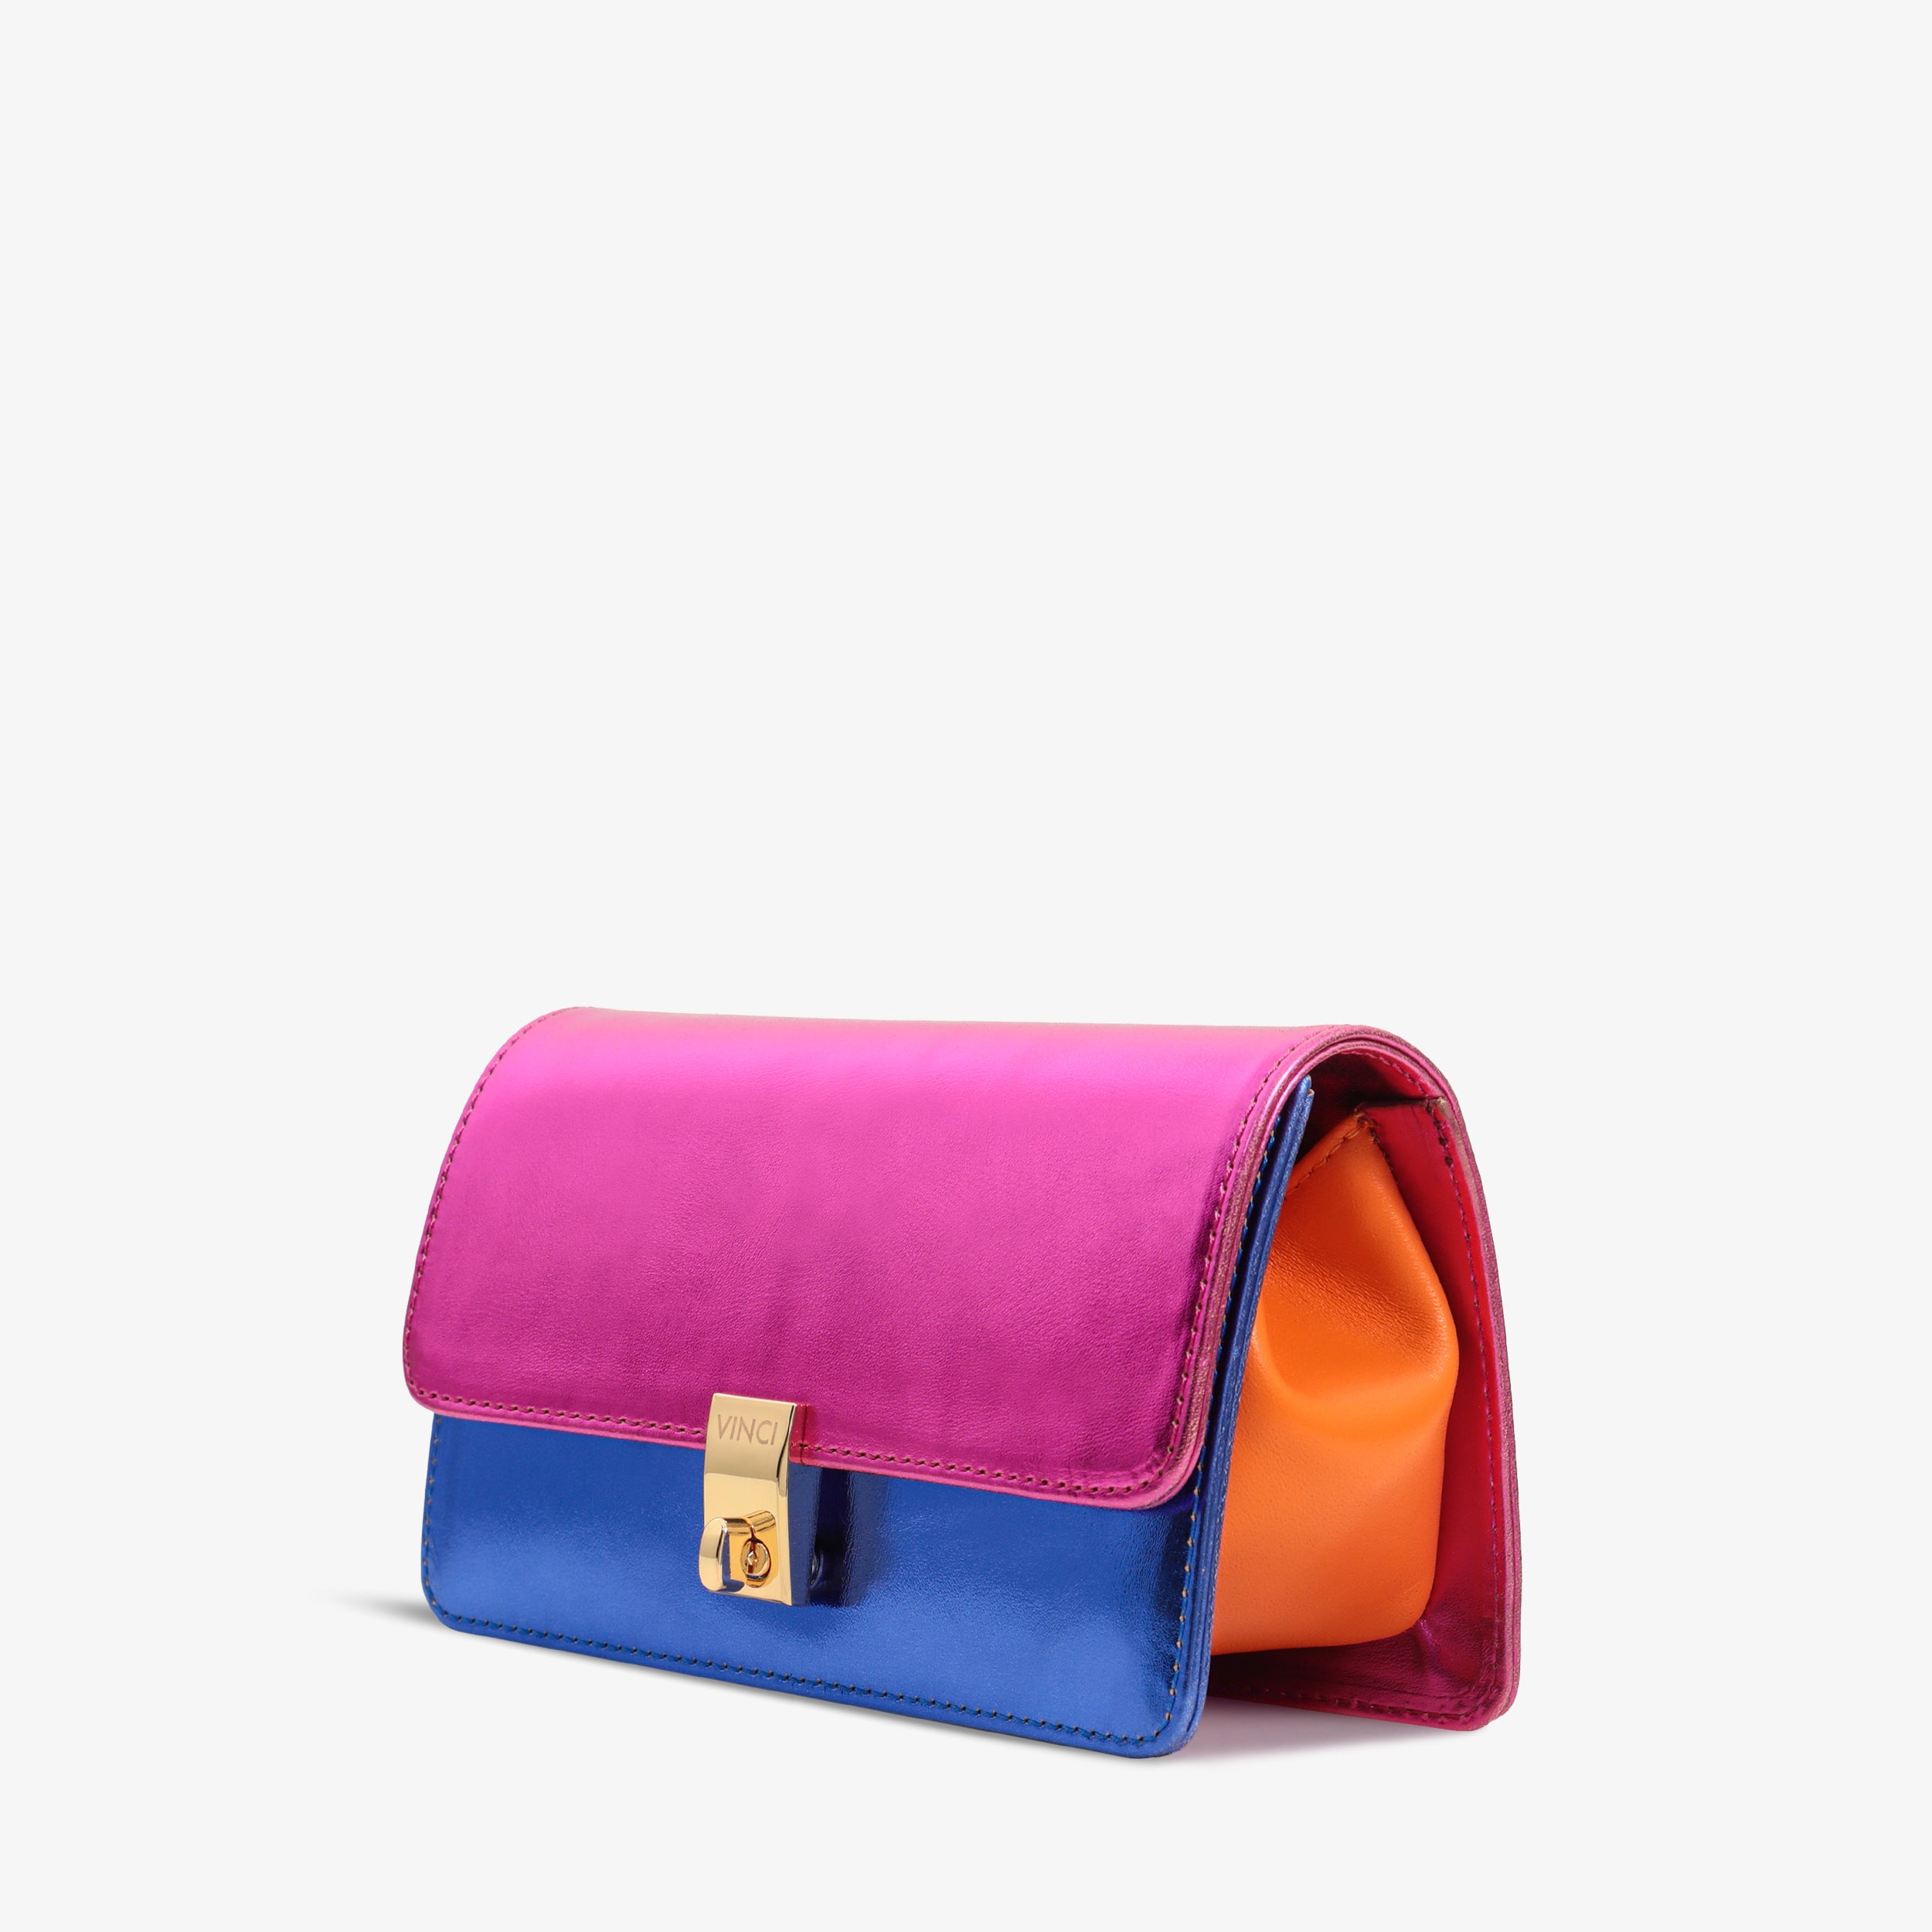 The Duffryn Multicolor Handbag